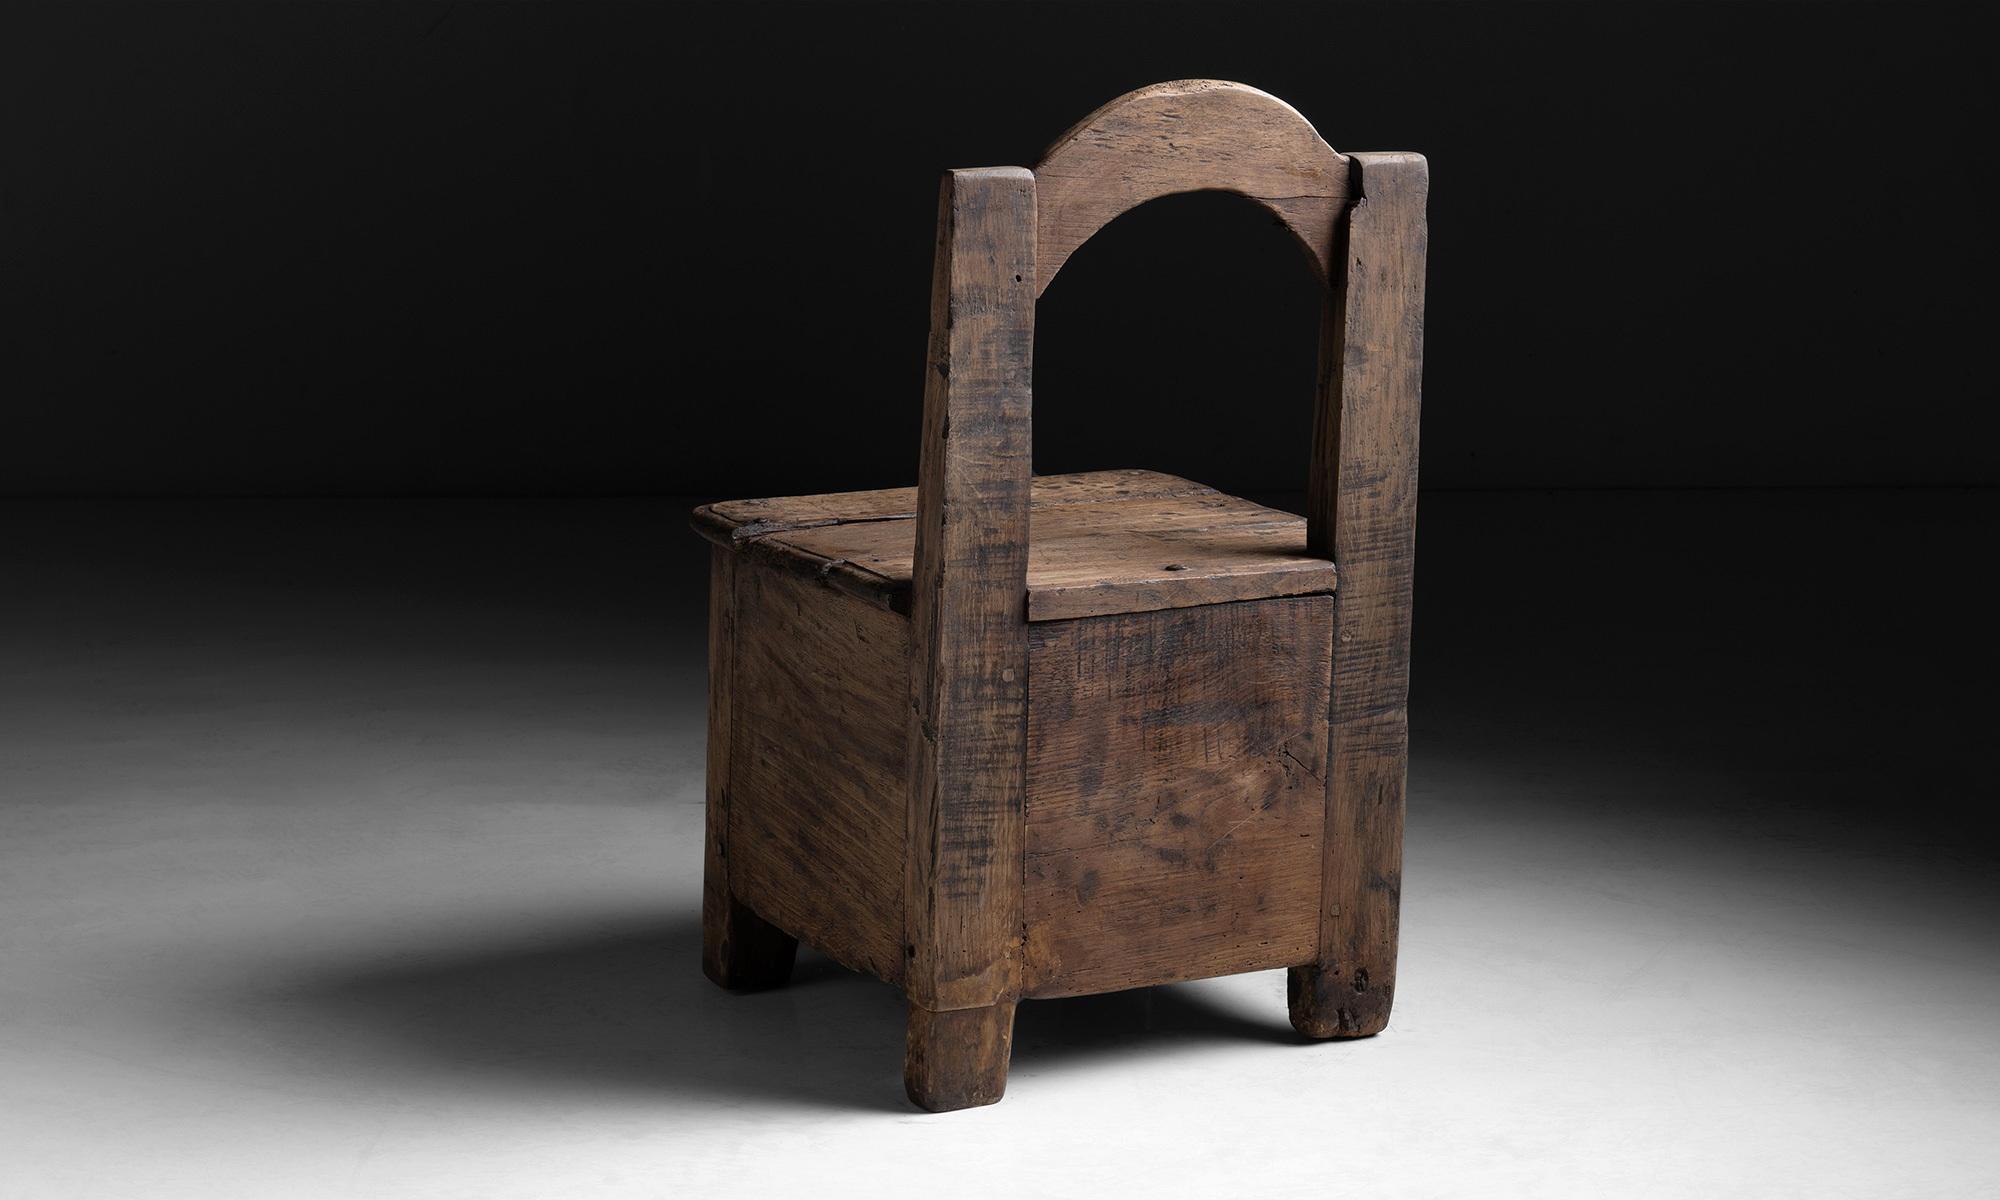 French Primitive Oak Chair, France, circa 1880